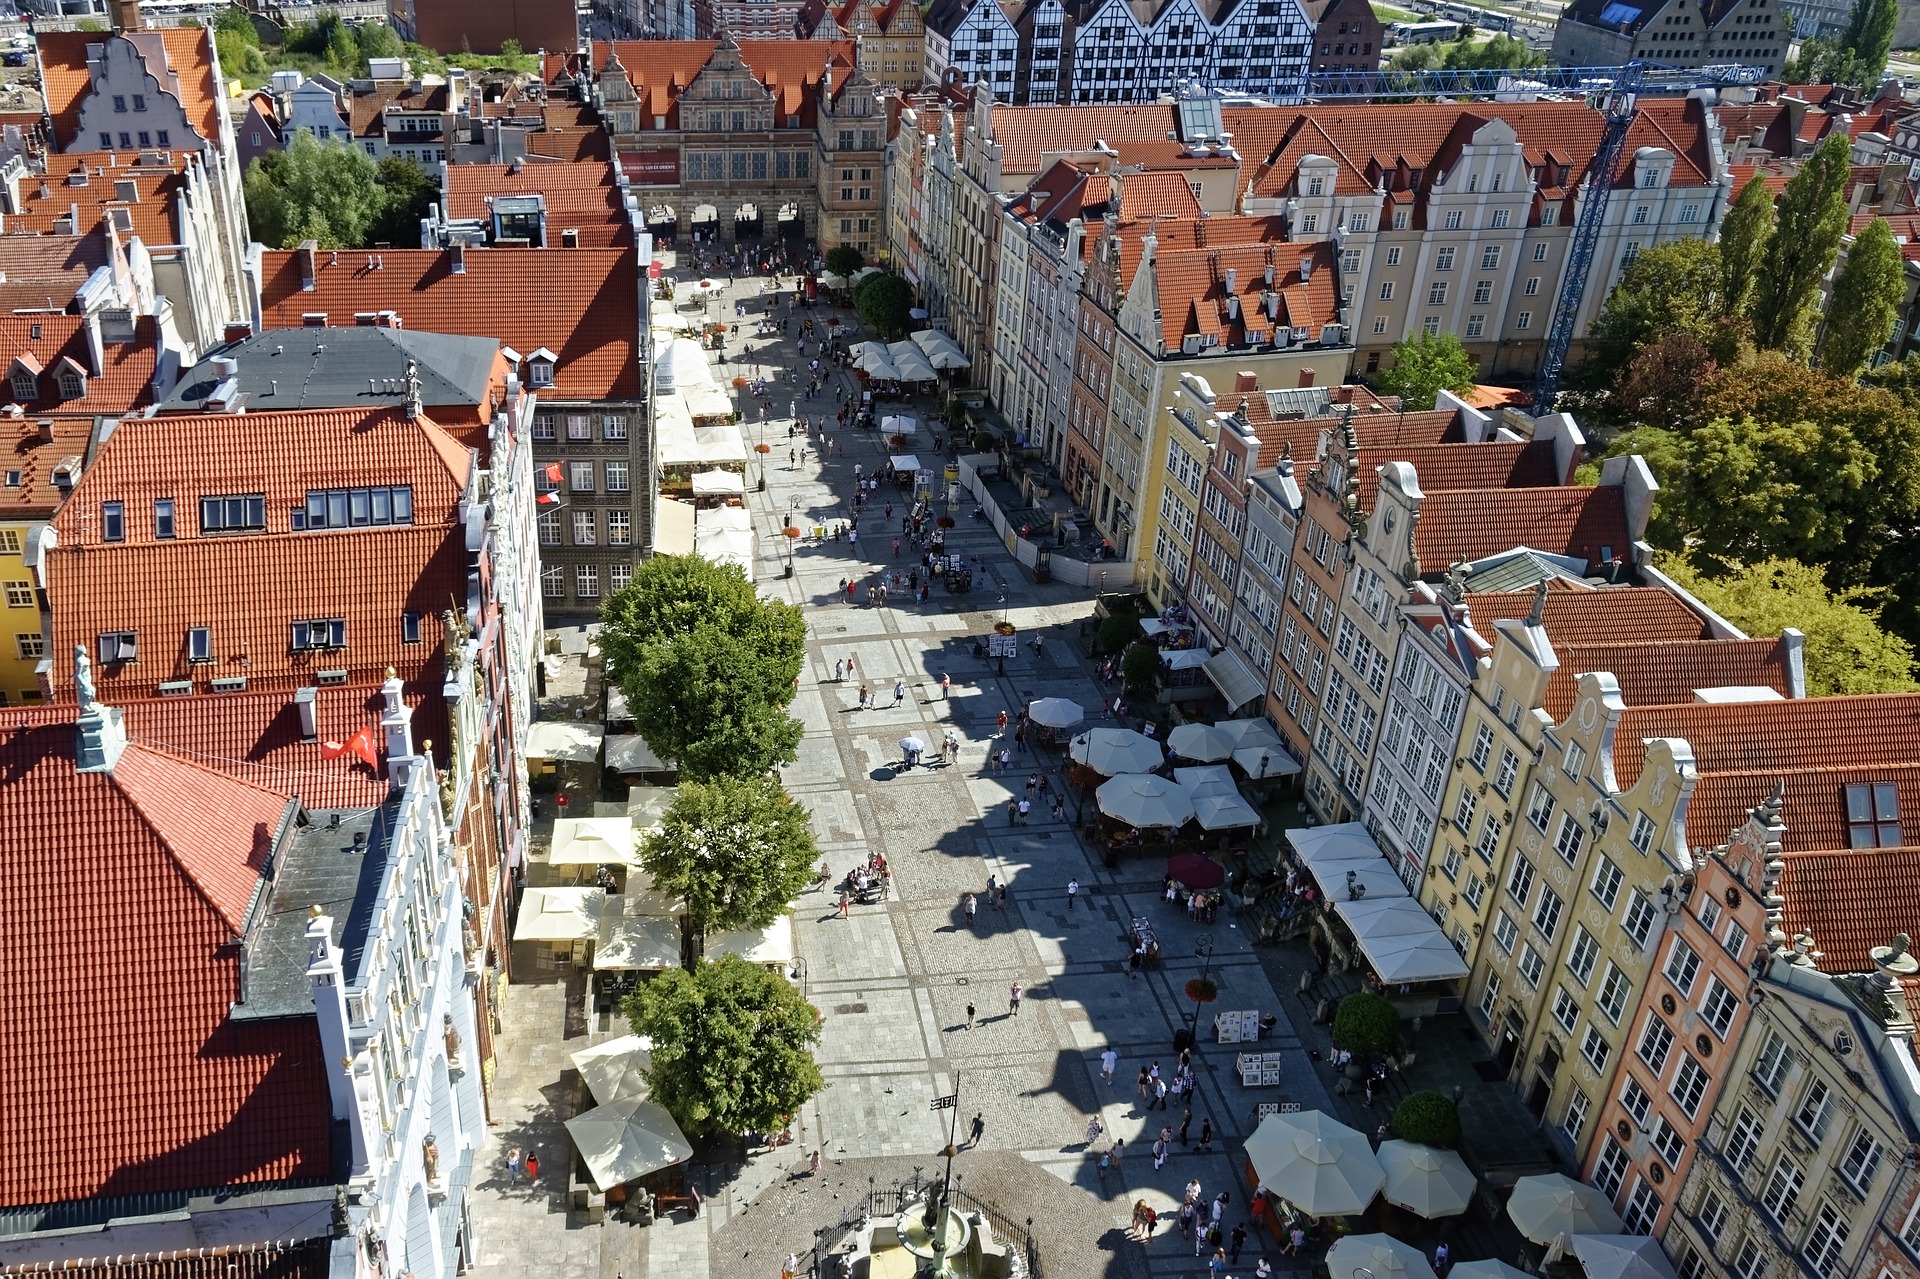 Mieszkanie pod klucz w Gdańsku – czy warto w nie zainwestować?